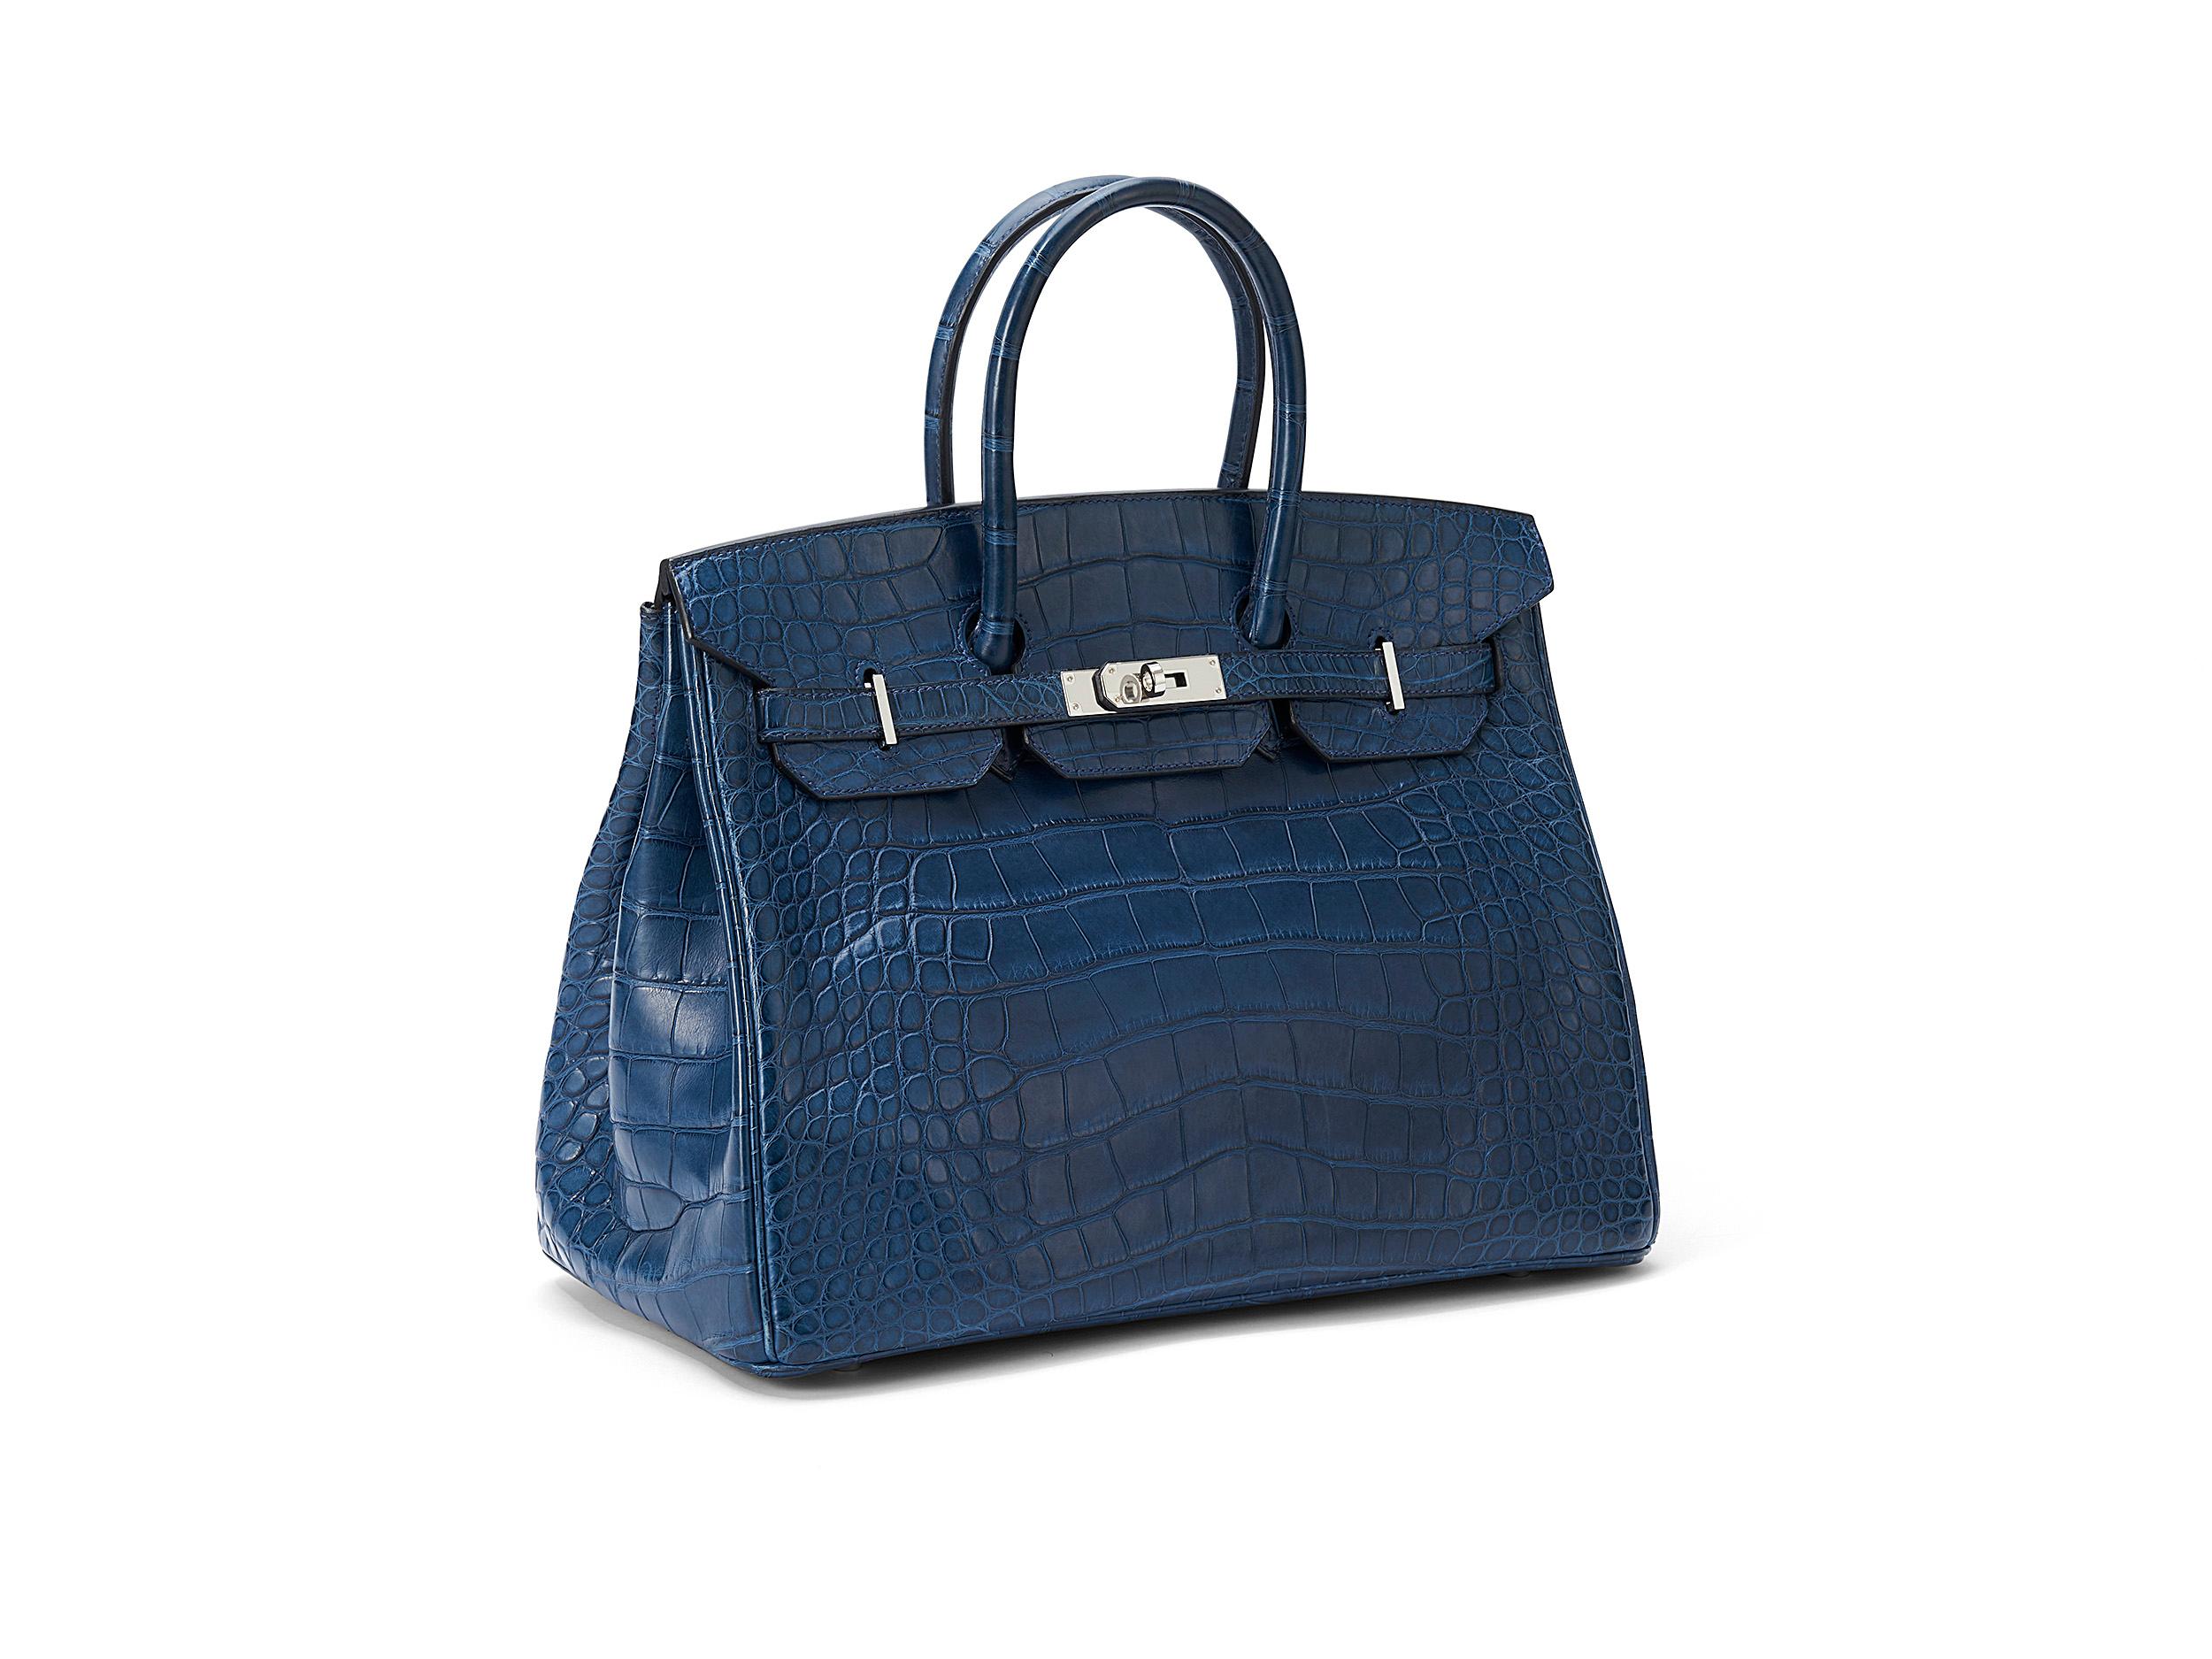 Hermès Birkin 35 en bleu de malte et cuir d'alligator mat avec accessoires en palladium. Le sac n'a pas été porté mais présente une petite éraflure sur un pied et un petit signe sur le fond intérieur. L'ensemble est livré complet, y compris le reçu